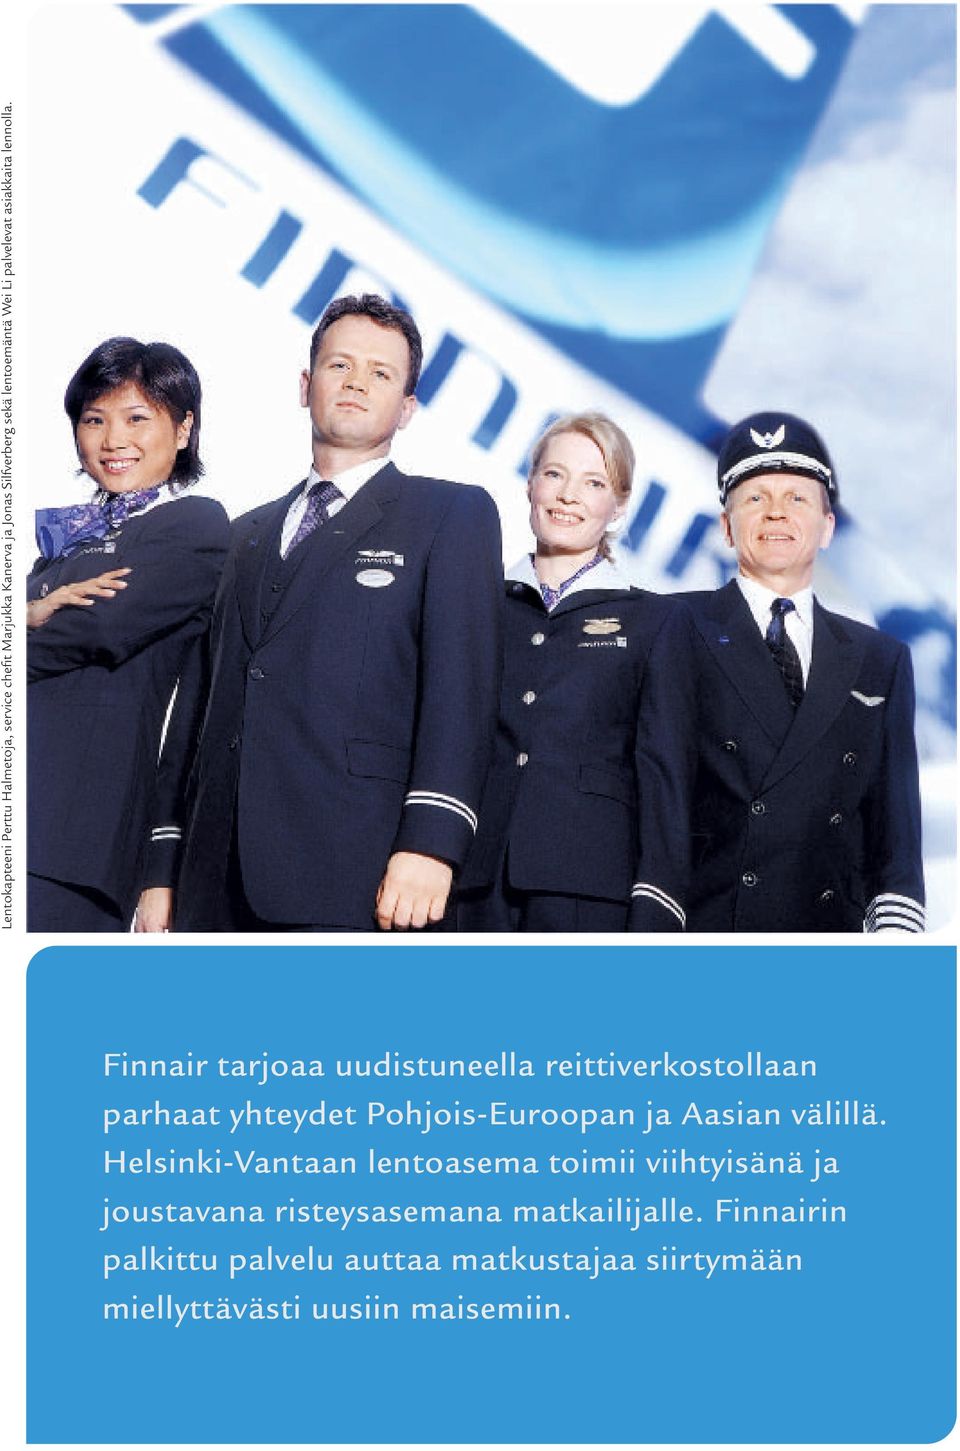 Finnair tarjoaa uudistuneella reittiverkostollaan parhaat yhteydet Pohjois-Euroopan ja Aasian välillä.